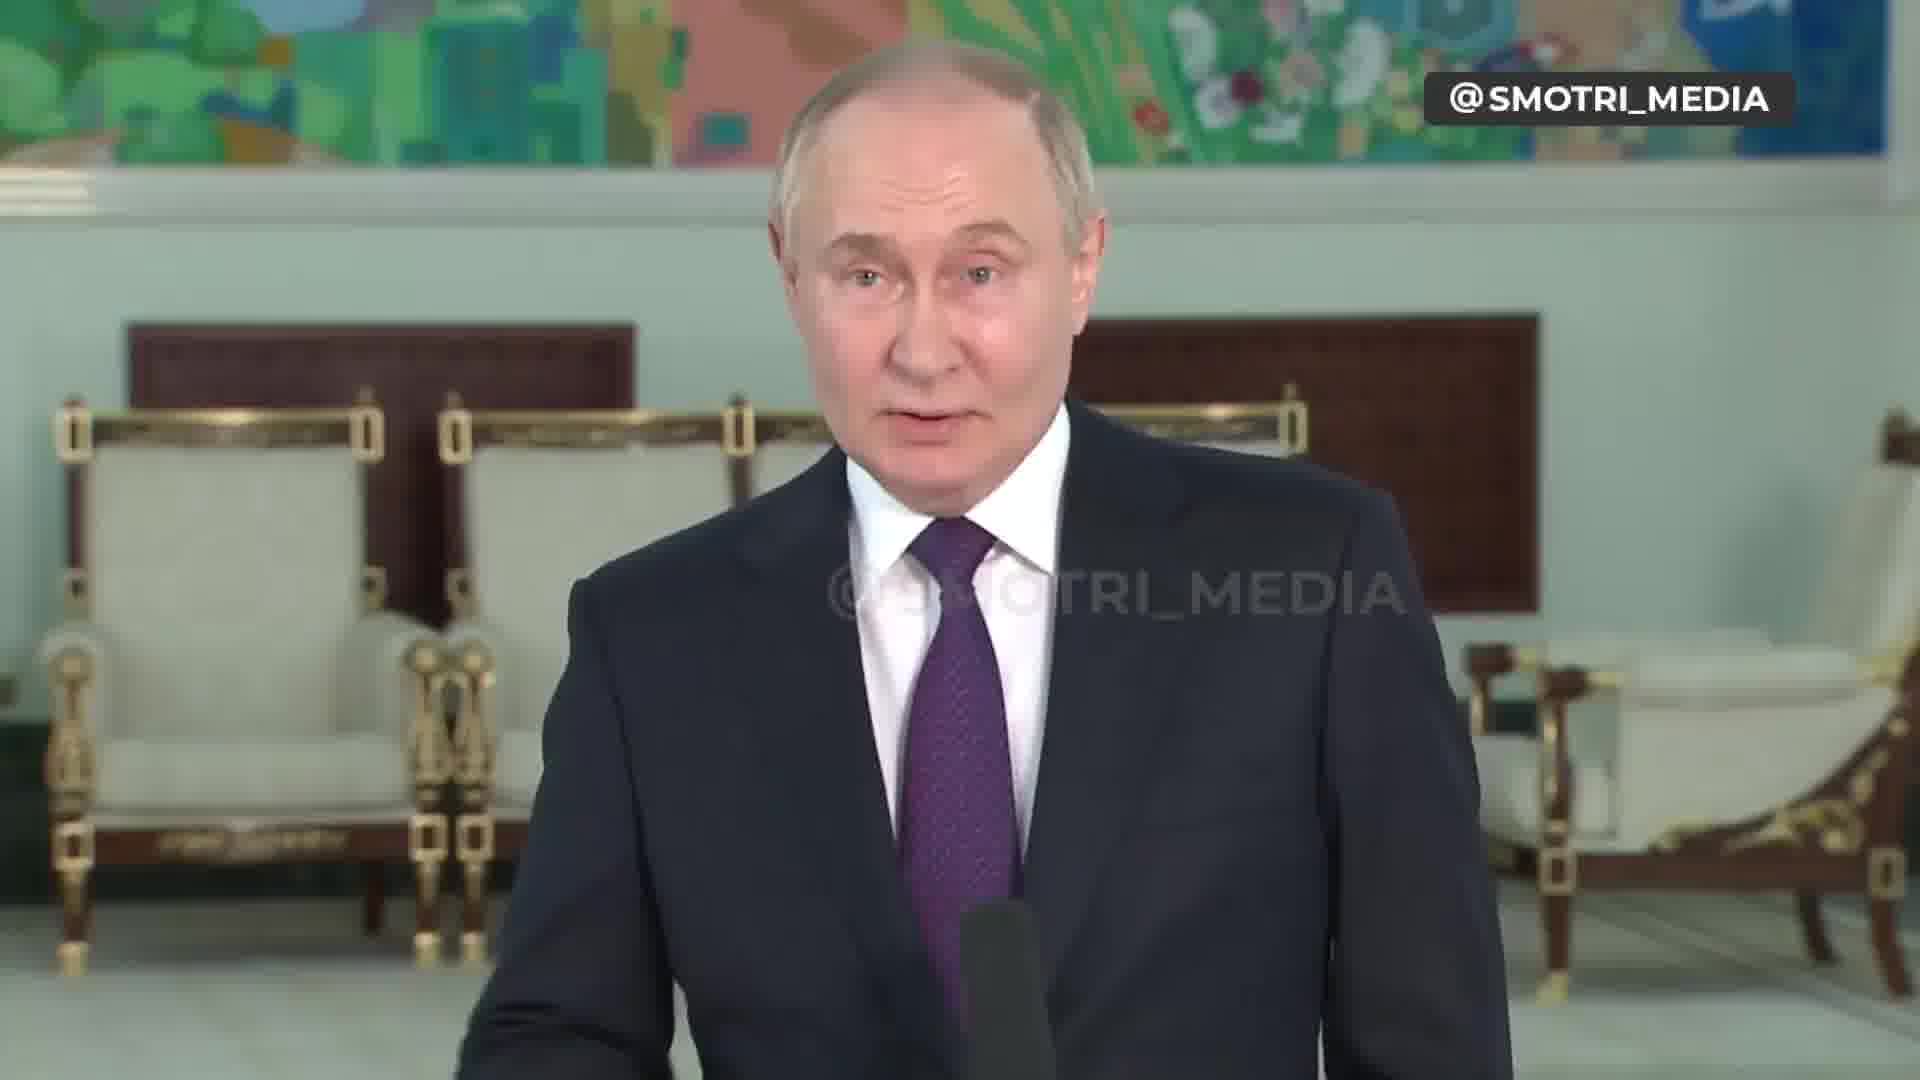 Putin dice que la Verjovna Rada de Ucrania es legítima y que el presidente de la Verjovna Rada debería ser el presidente interino